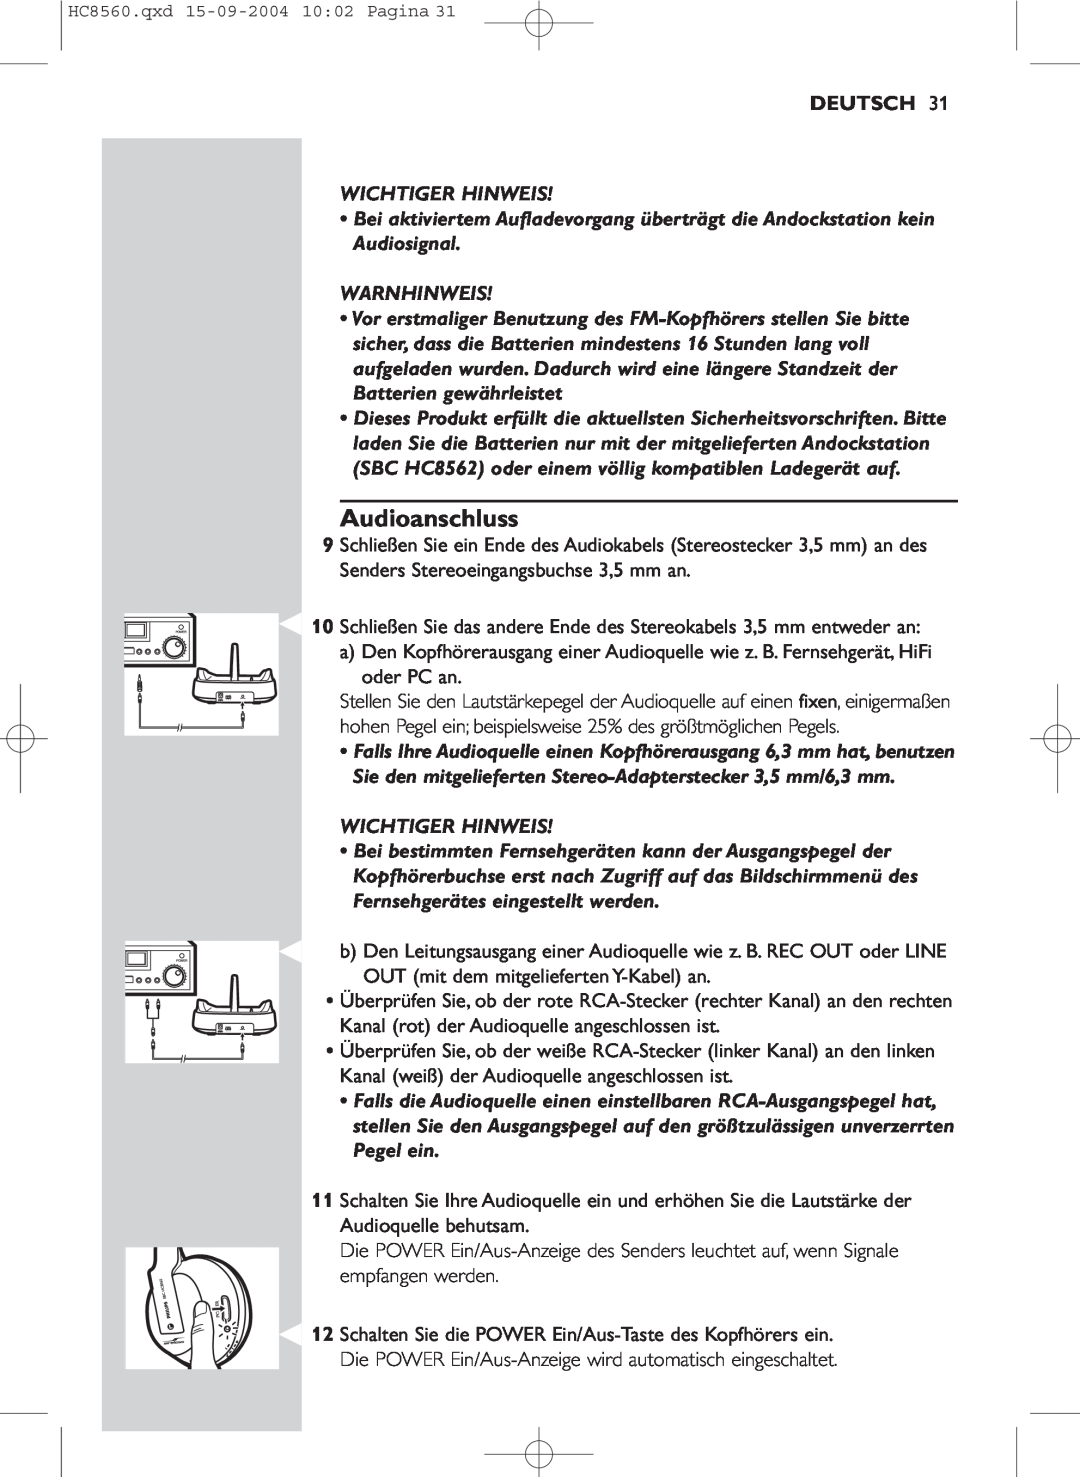 Philips HC 8560 manual Audioanschluss, Deutsch, Wichtiger Hinweis, Warnhinweis 